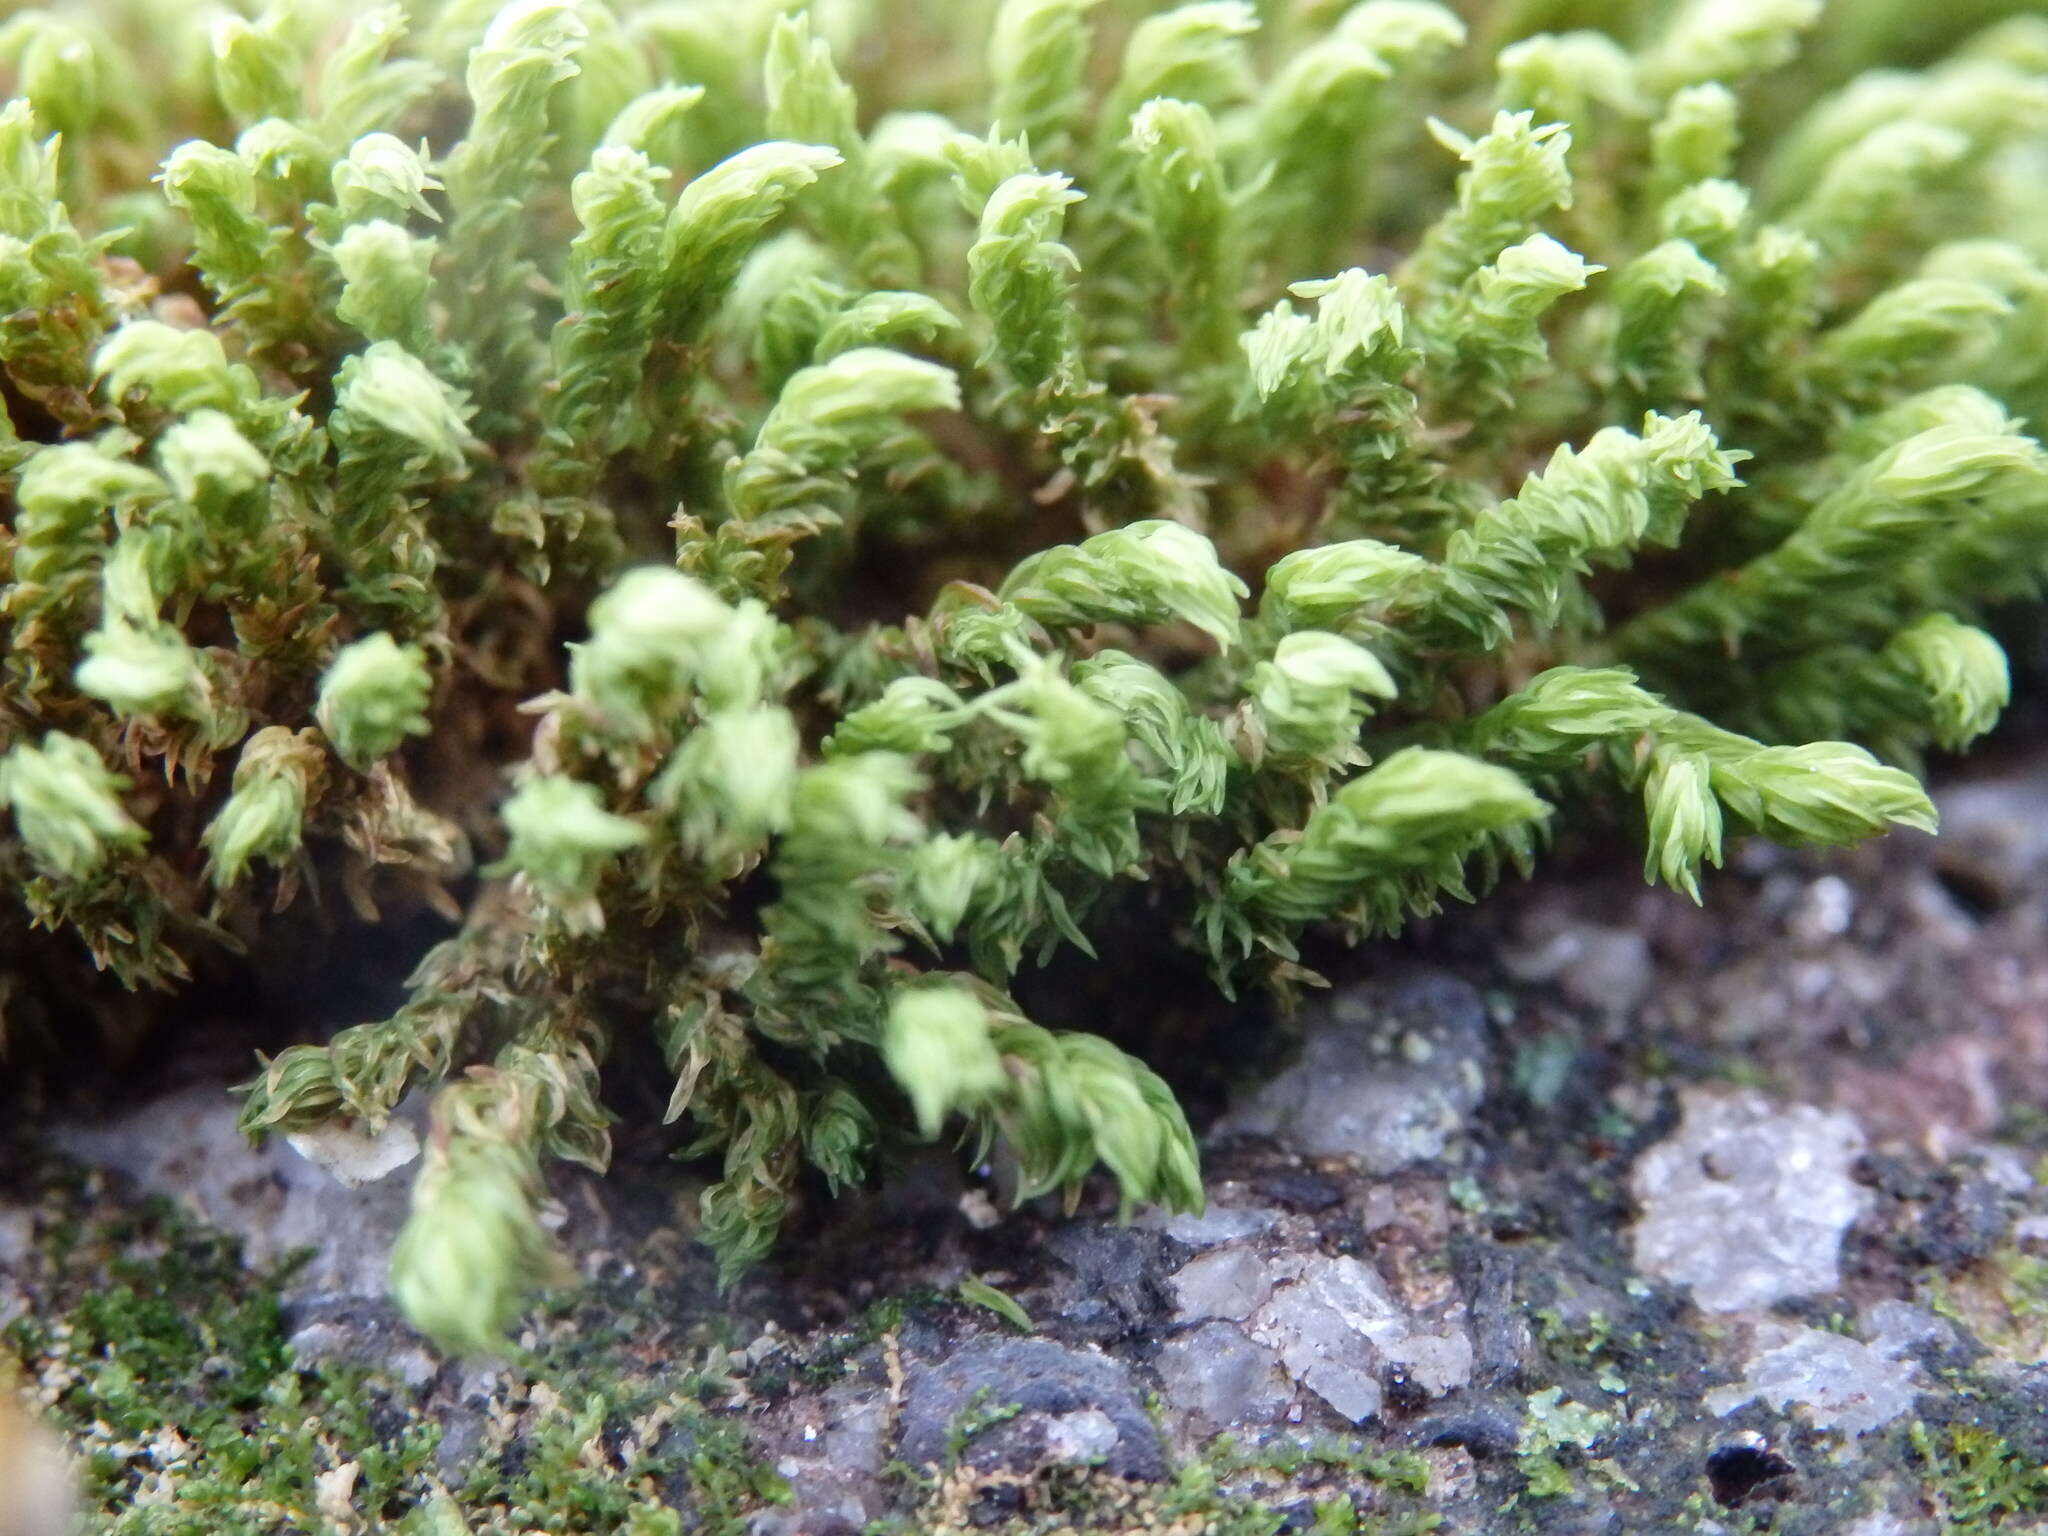 Image of aquatic racomitrium moss